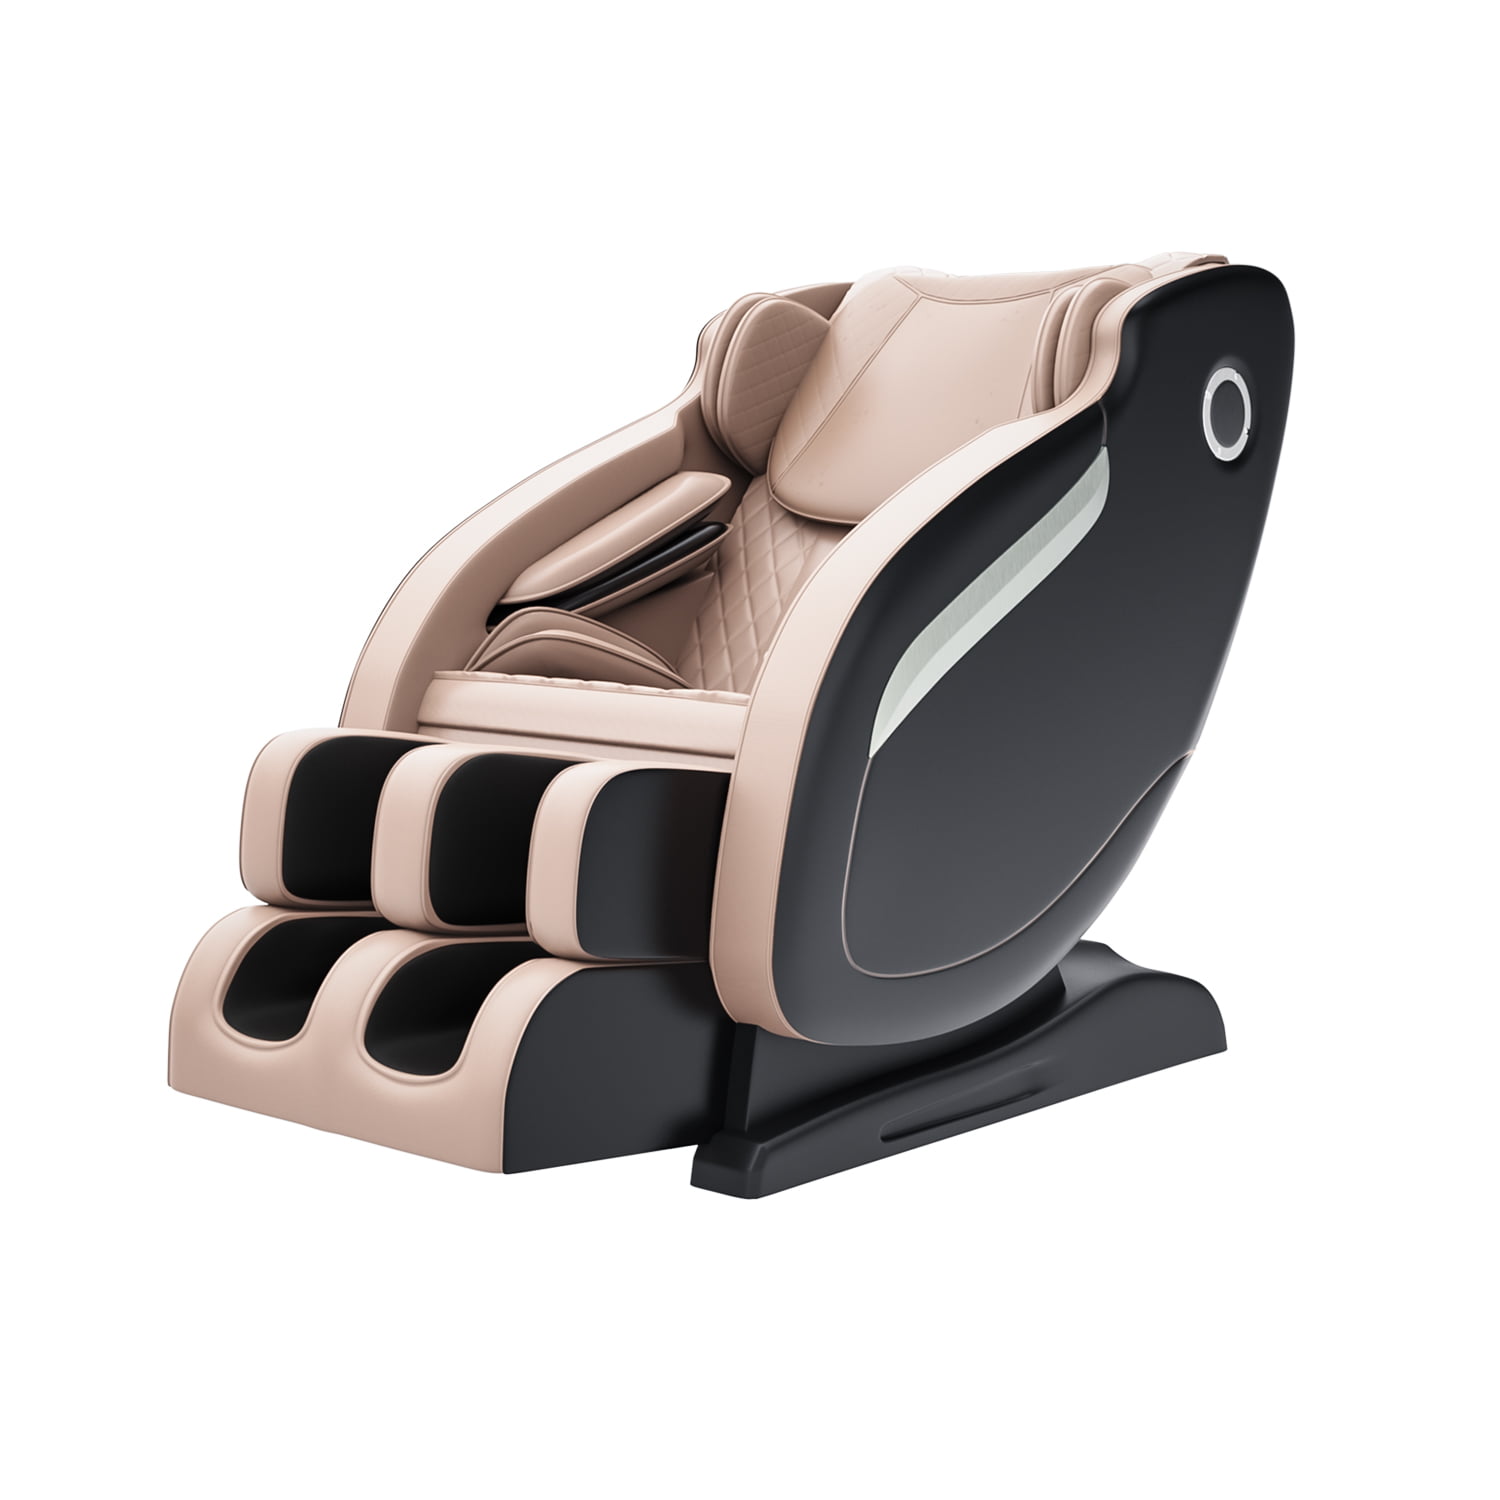 irest sl track massage chair recliner